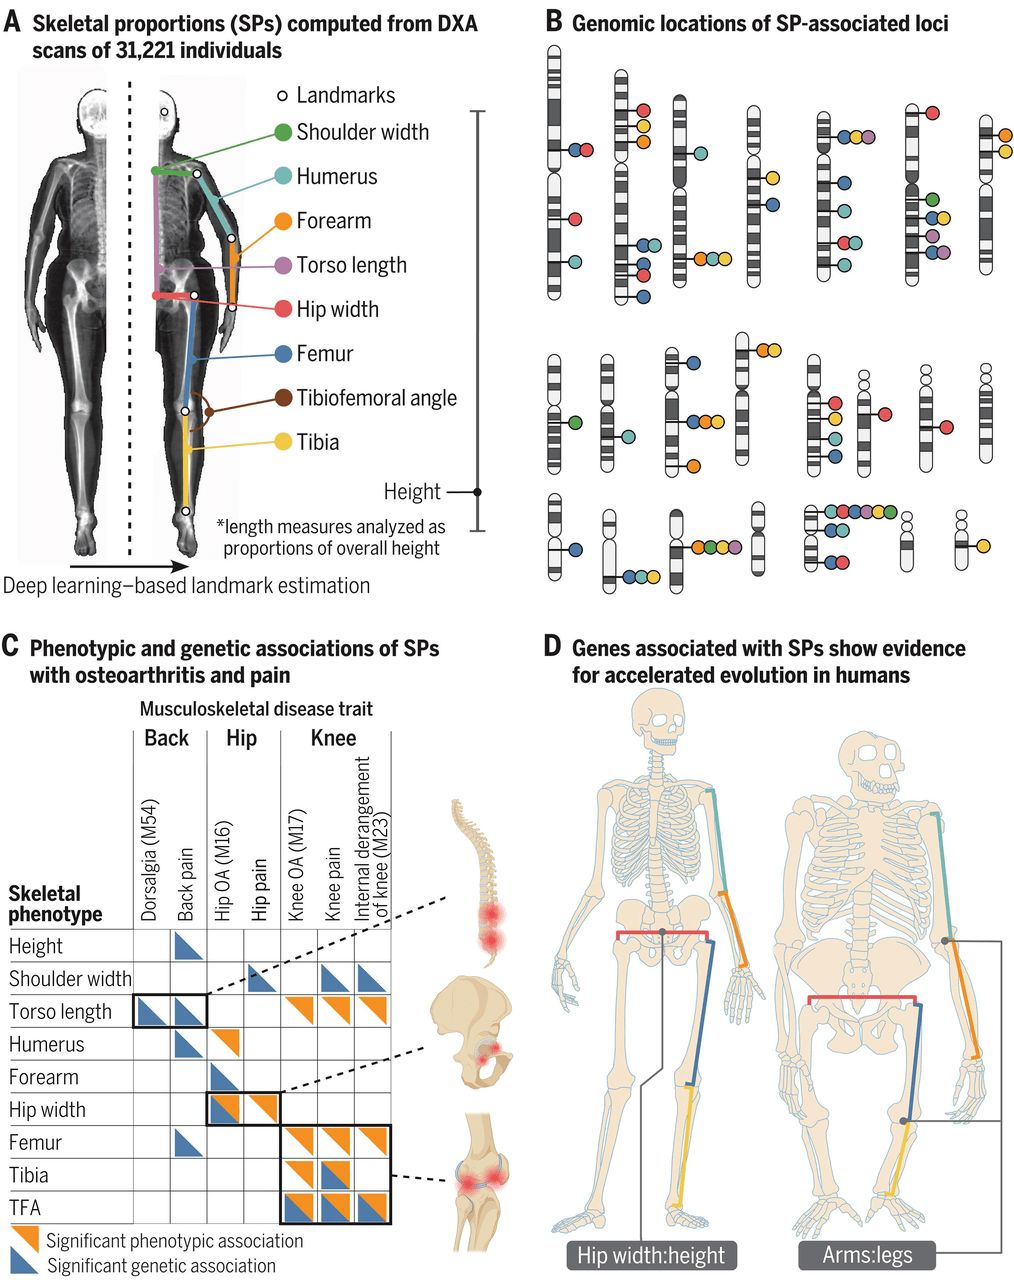 德克萨斯大学奥斯汀分校和纽约基因组中心的一组研究人员利用人工智能仔细研究了数以万计的 X 光照片和基因序列，成功地确定了塑造我们从肩宽到腿长的骨骼的基因。